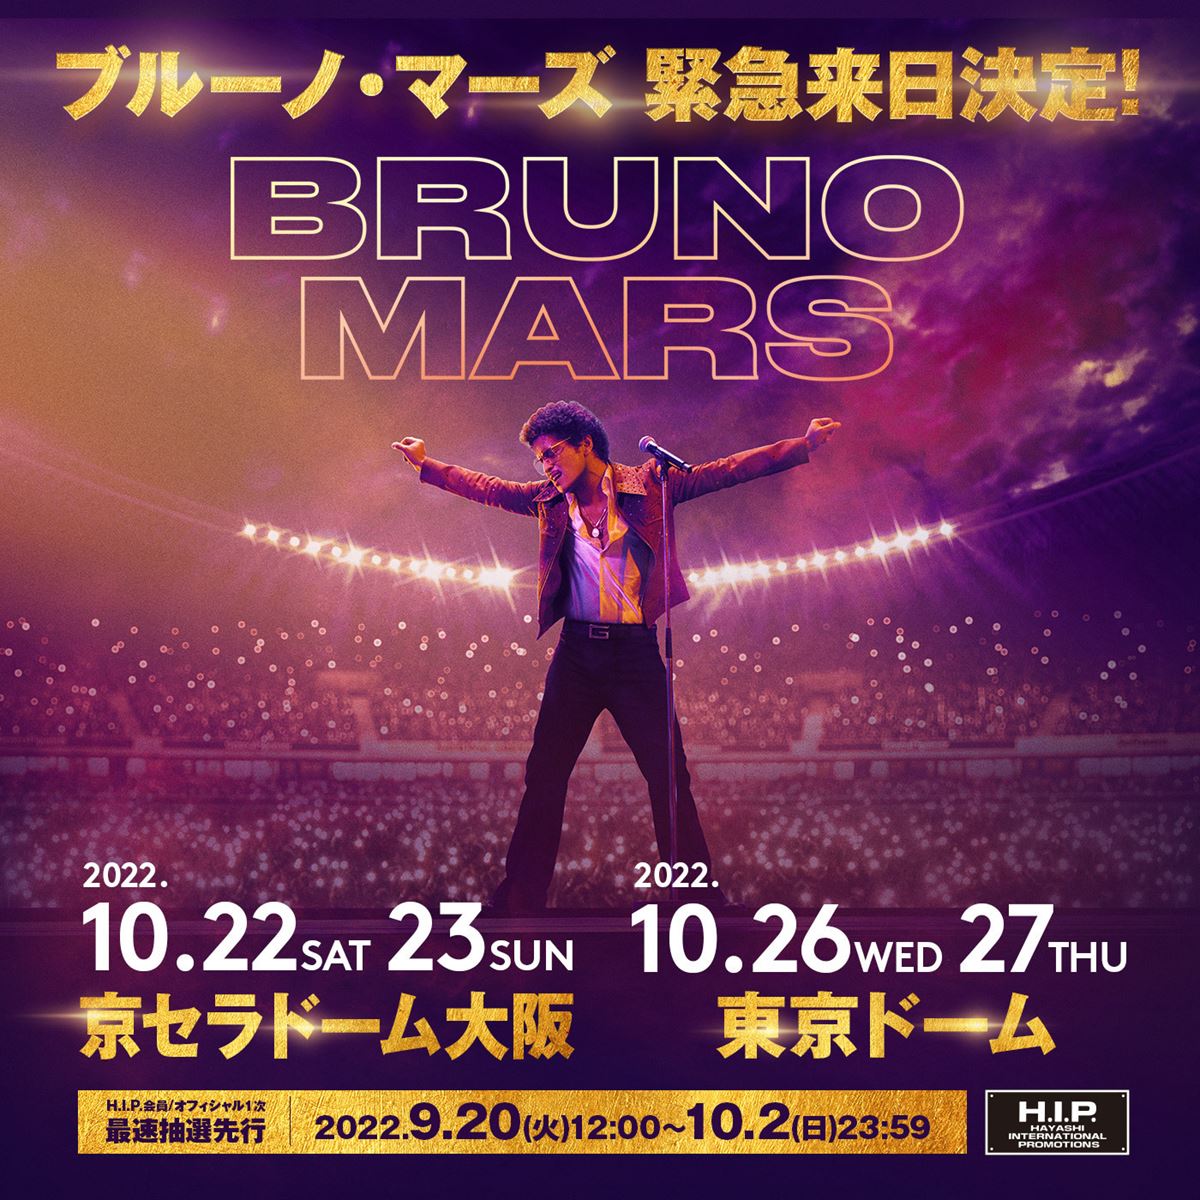 4年半ぶりの来日公演『Bruno Mars Japan Tour 2022』開催決定 ブルーノ・マーズが動画でコメントも ぴあ音楽